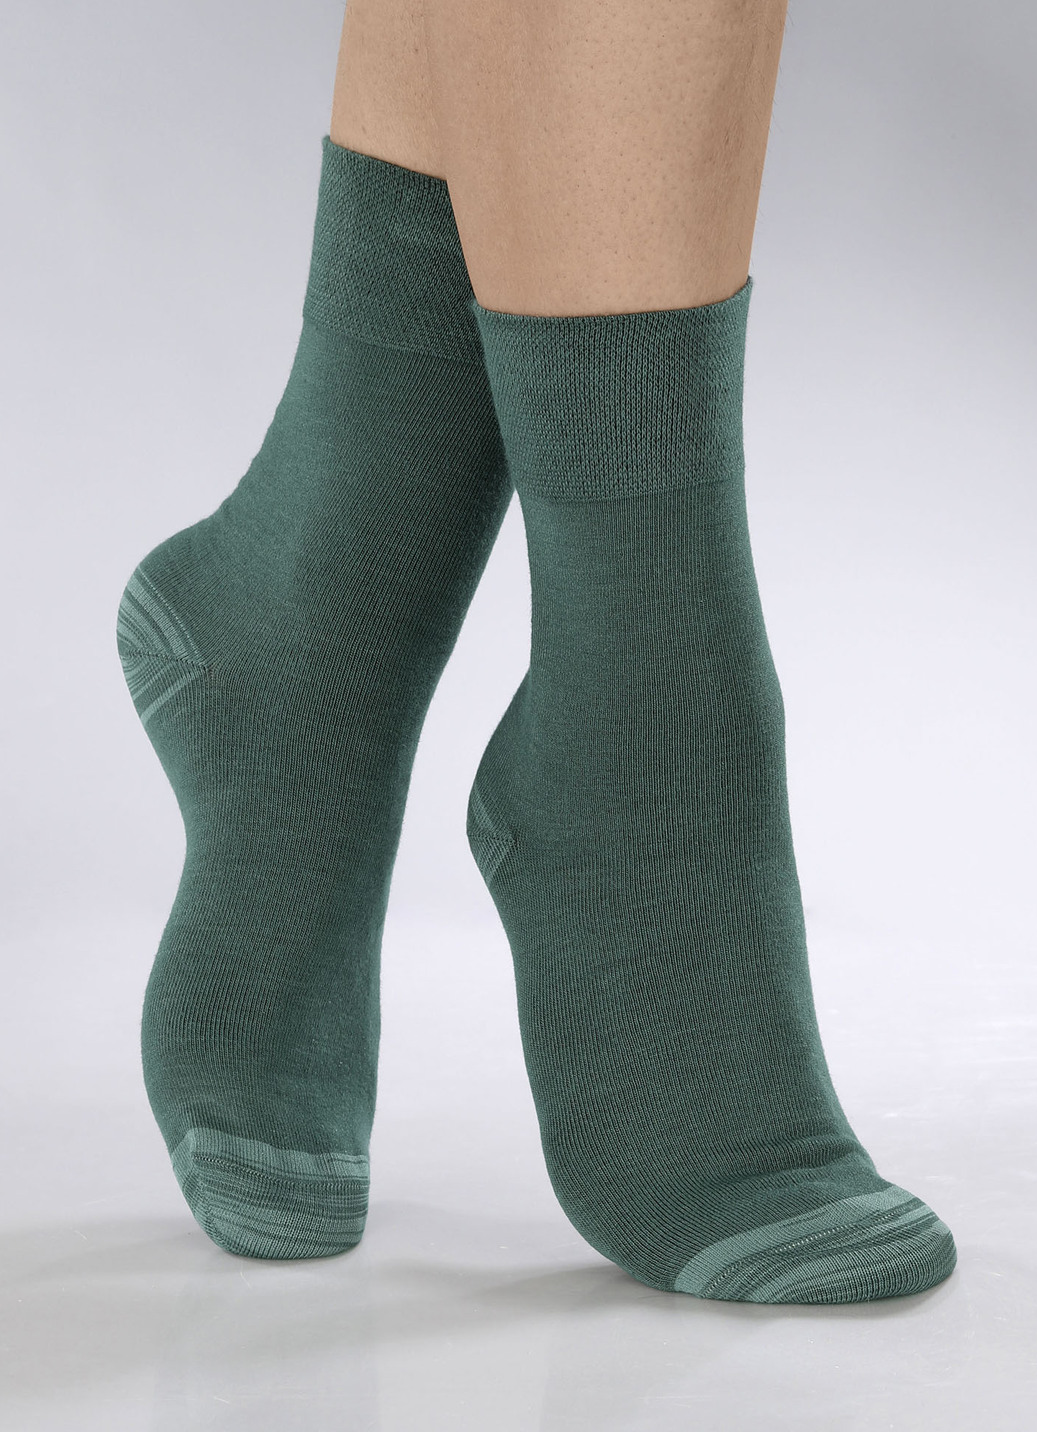 Sechserpack Socken in verschiedenen Farbstellungen, Größe 1 (Schuhgr. 35-38), 2X Grün, 2X Petrol, 2X Beere von BADER